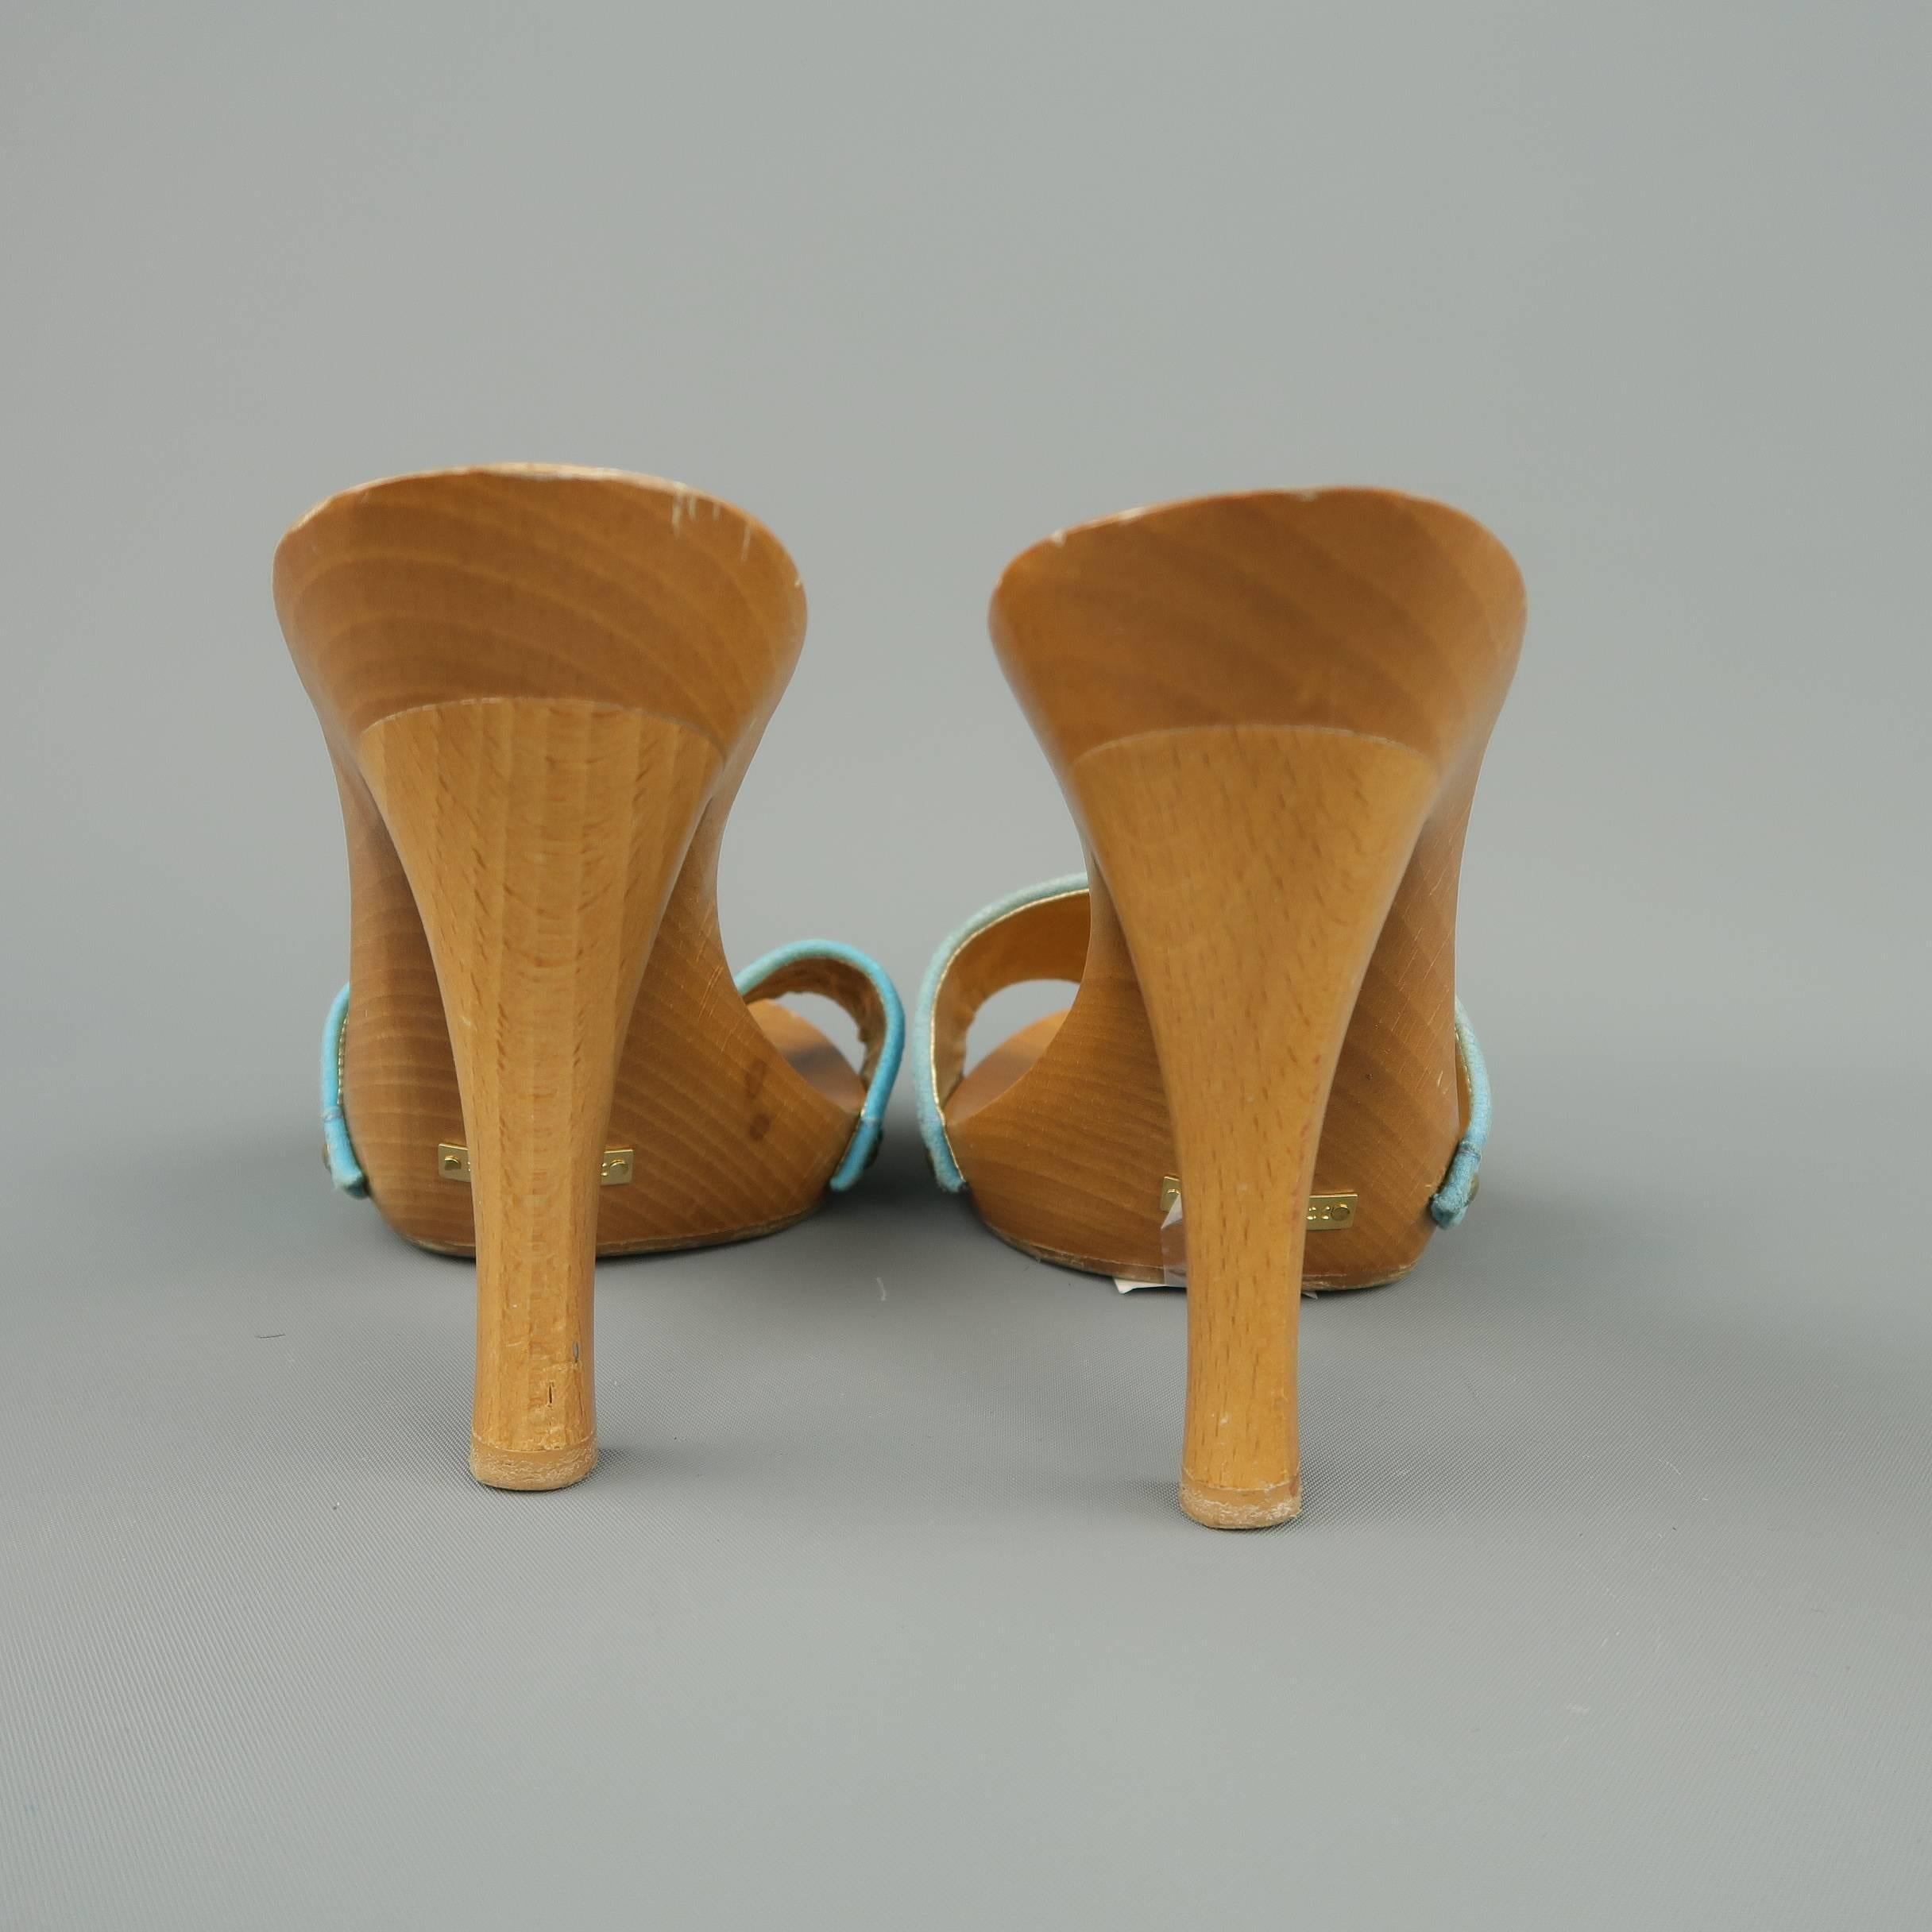 DOLCE & GABBANA Size 7 Blue Rhinestone Suede Wooden Platform Mule Sandals 1